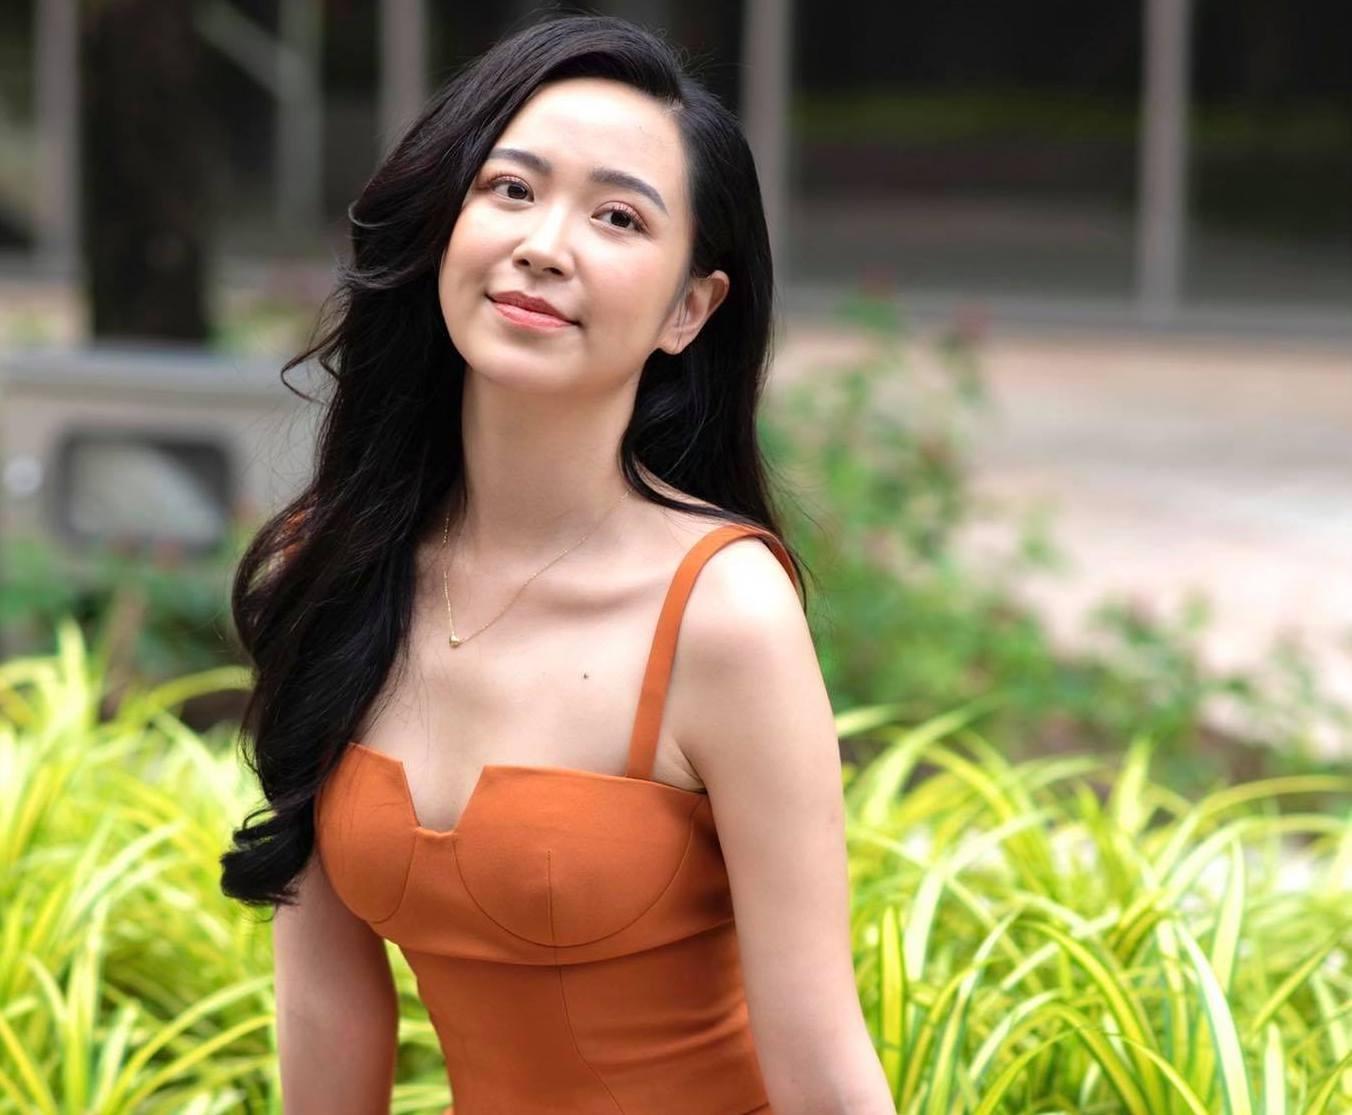 'Người tình màn ảnh' của NSND Công Lý - diễn viên Kim Oanh hé lộ không gian căn hộ ở Sài Gòn - Ảnh 2.